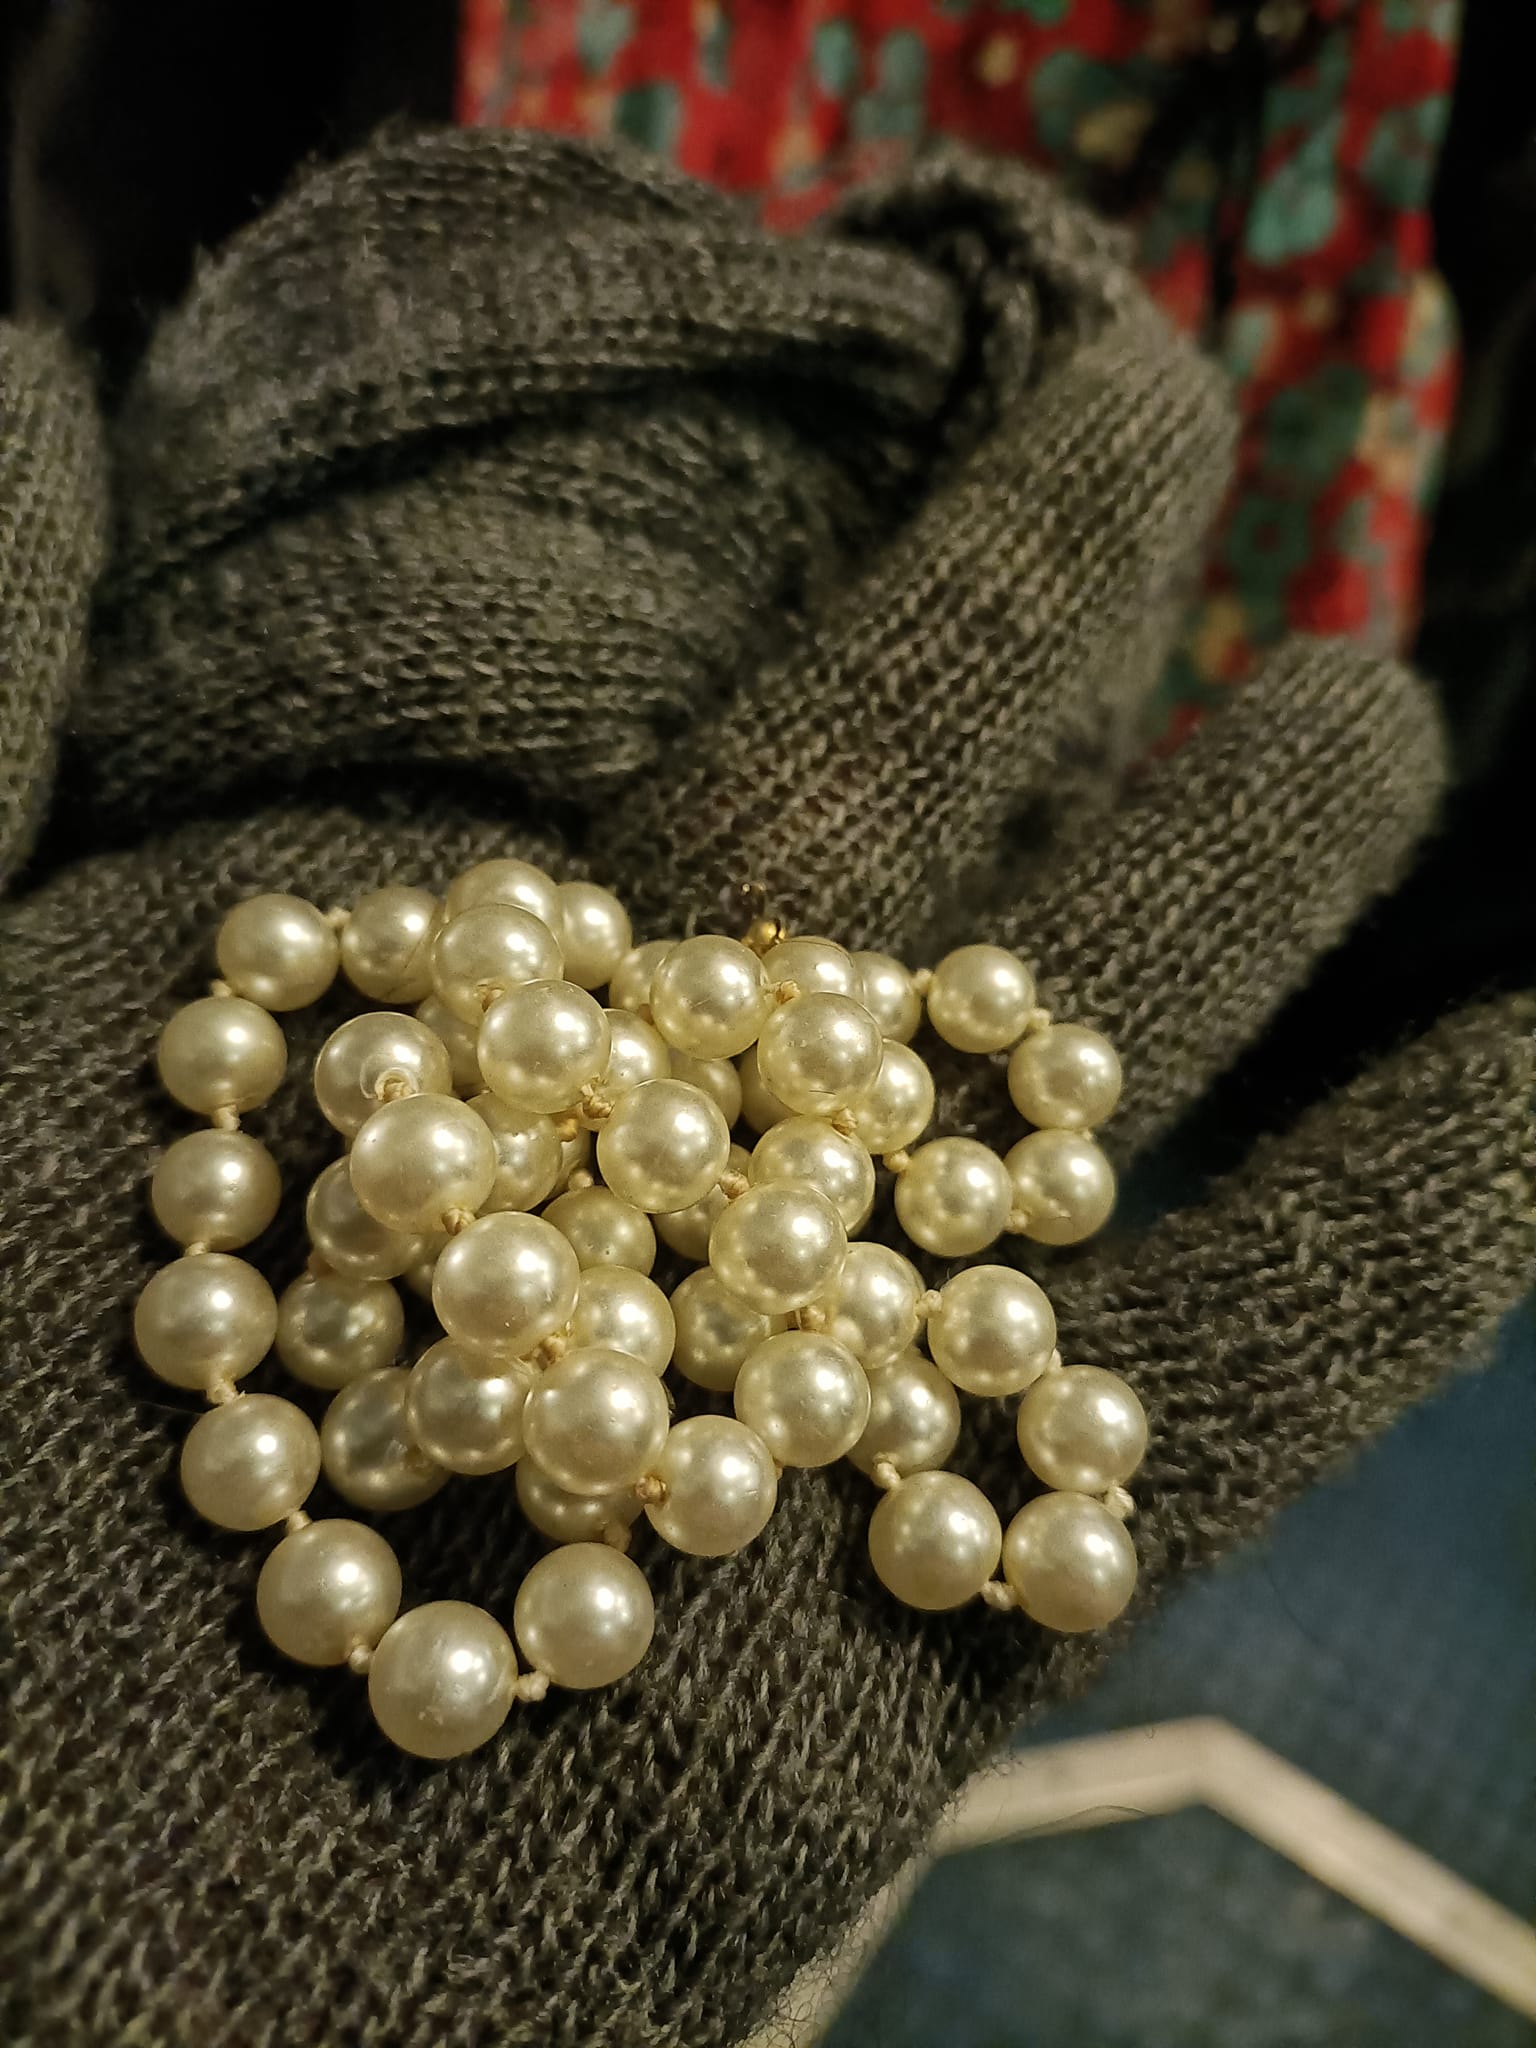 Trovata sul treno: di chi è la collana di perle?